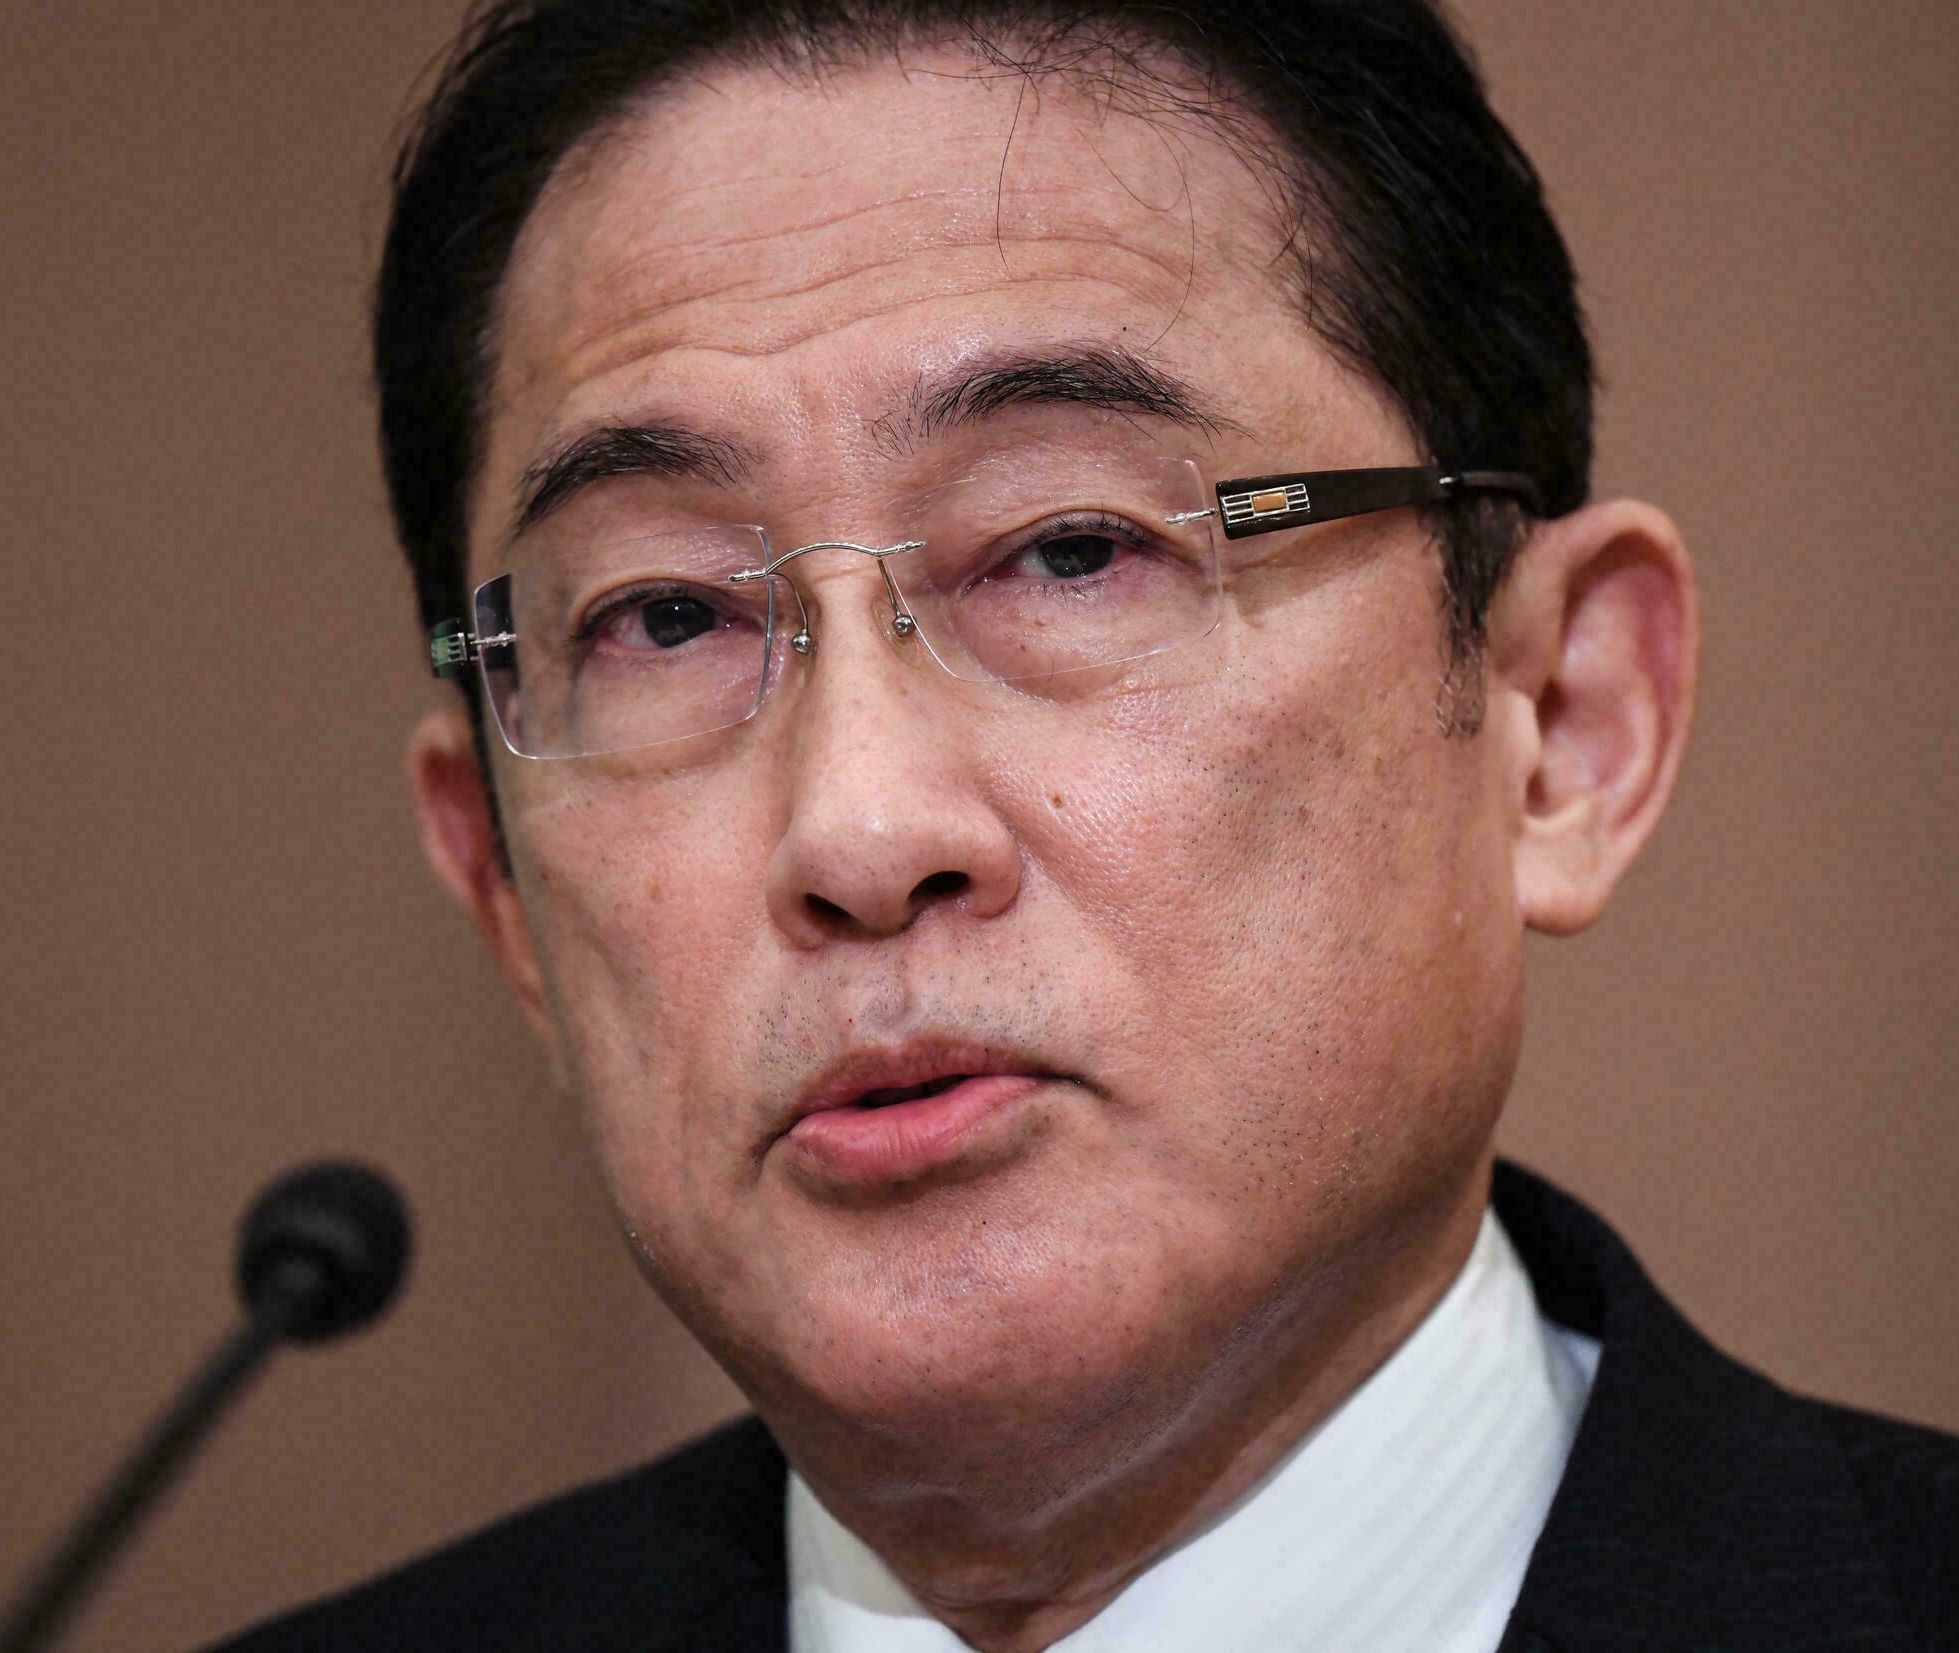 Fumio Kishida, Japan's Prime Minister